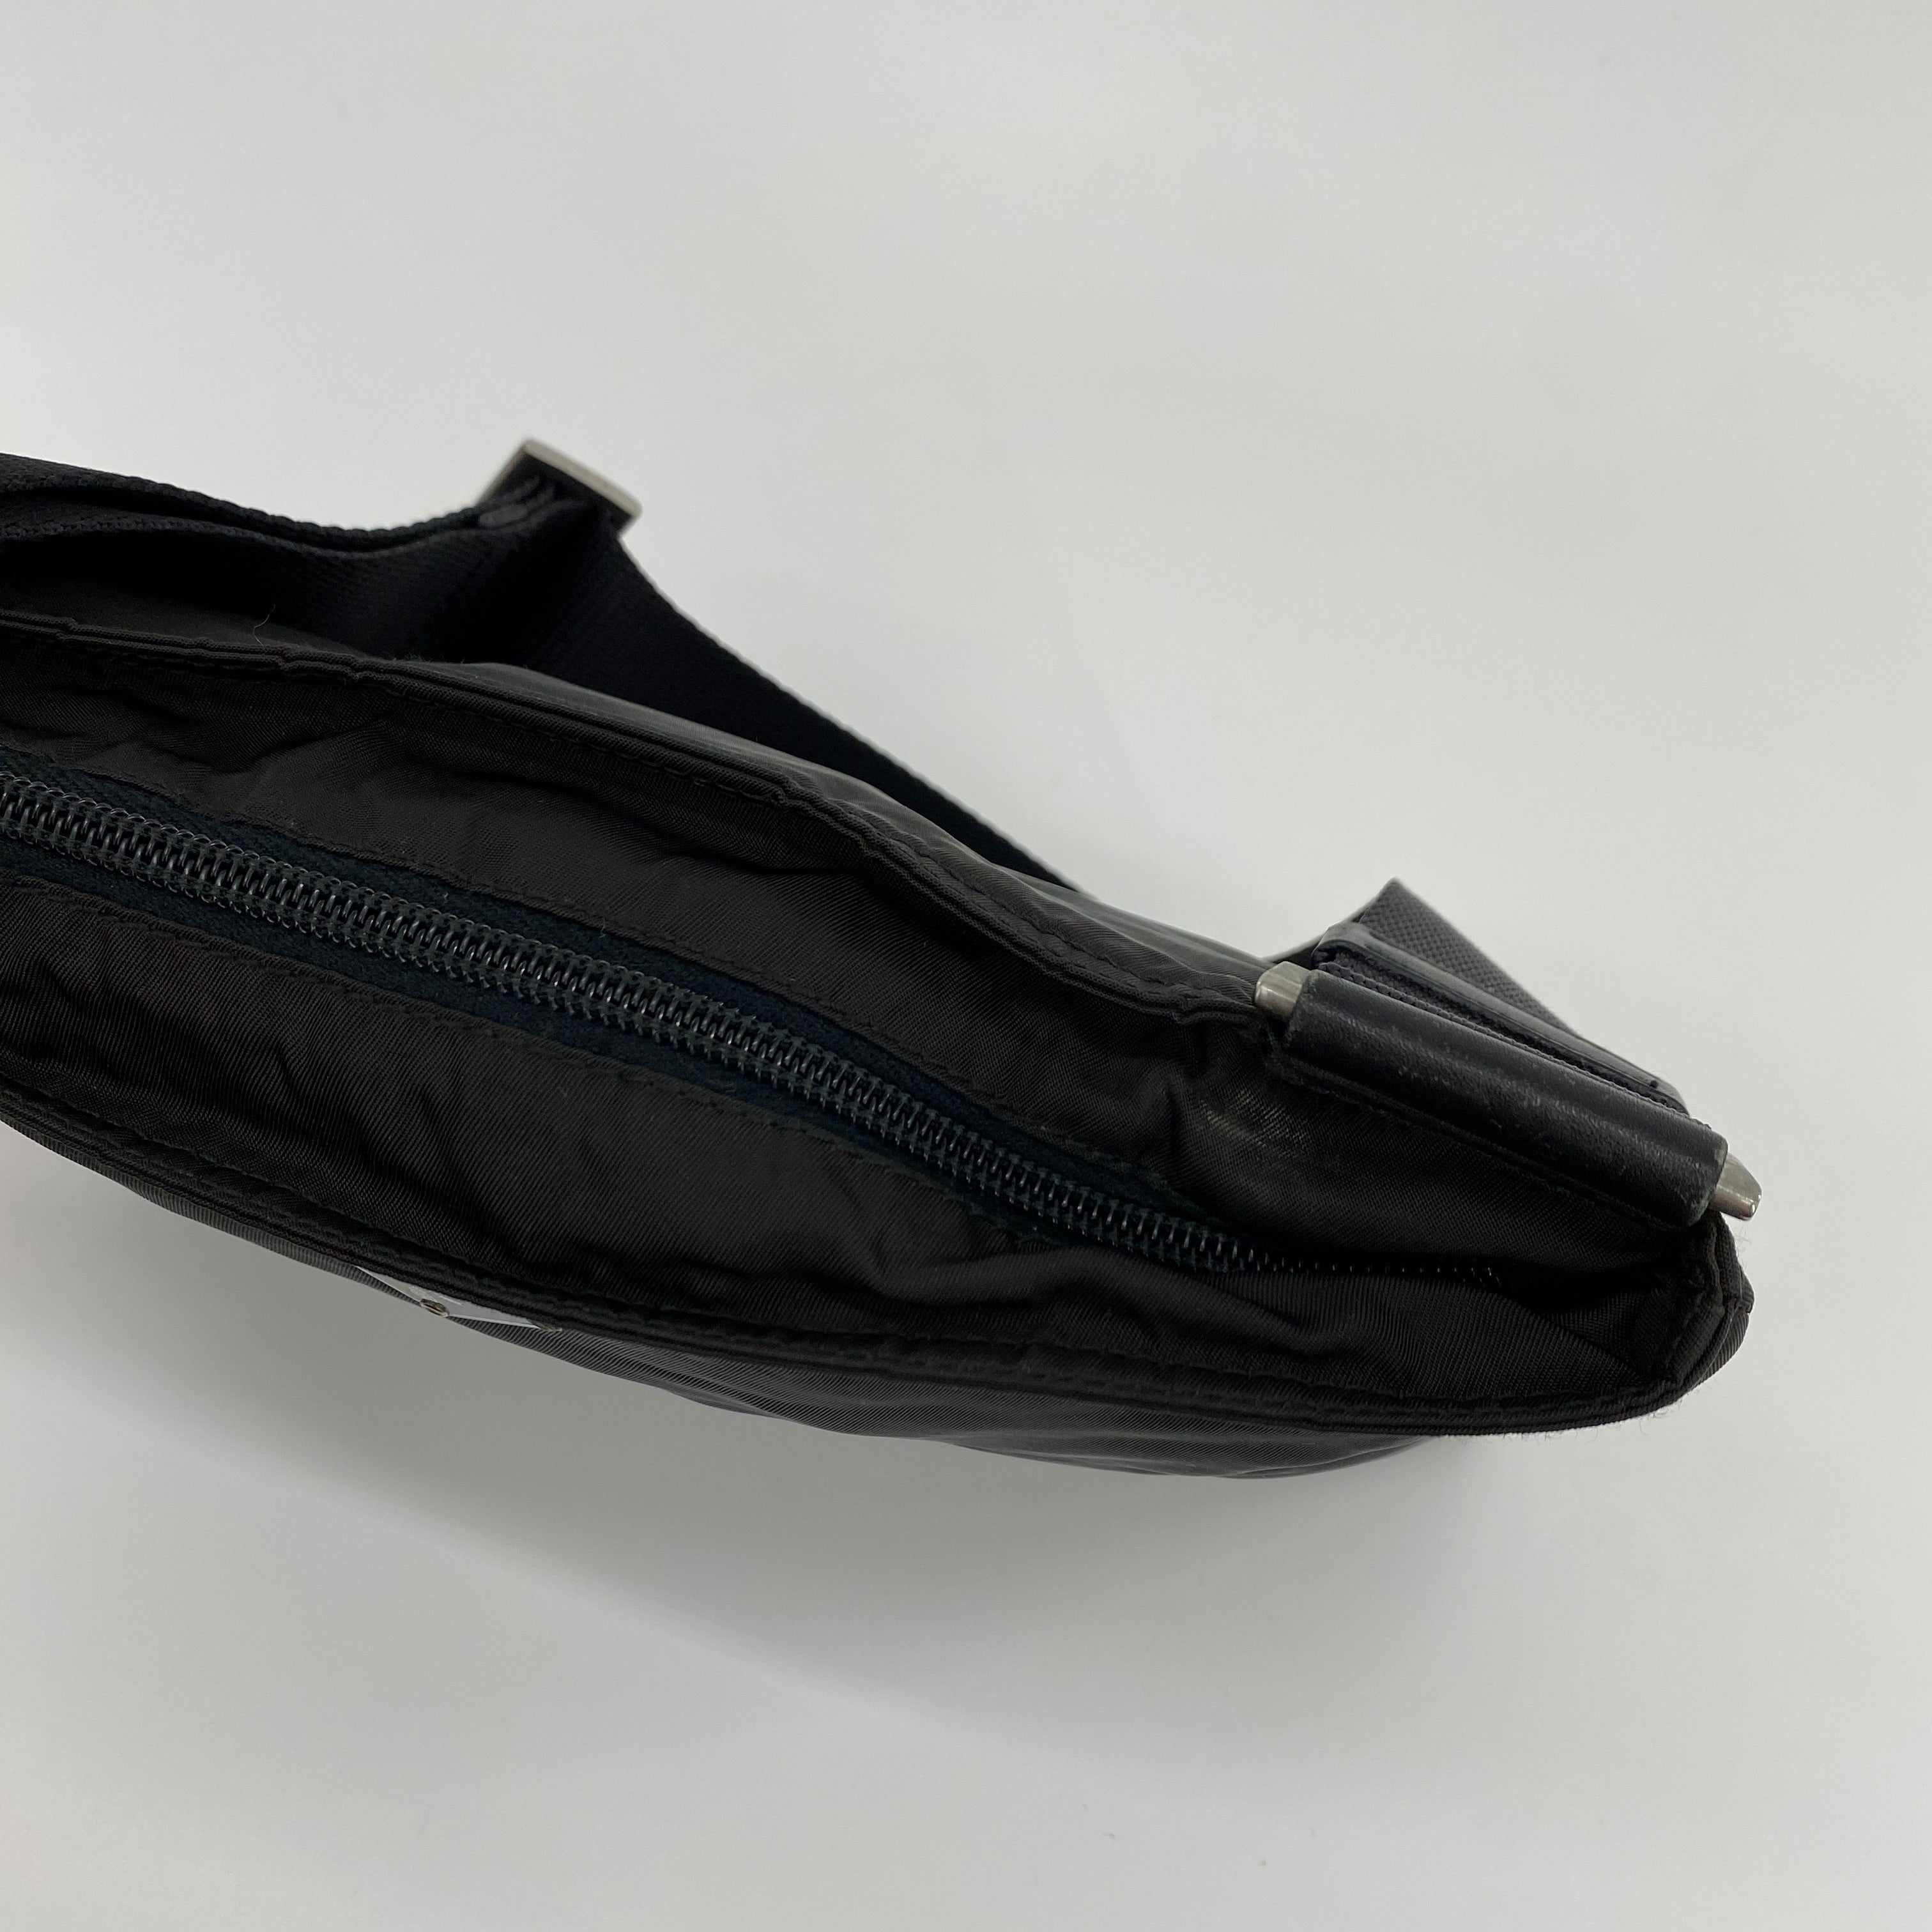 Nylon Flat Shoulder Bag Black